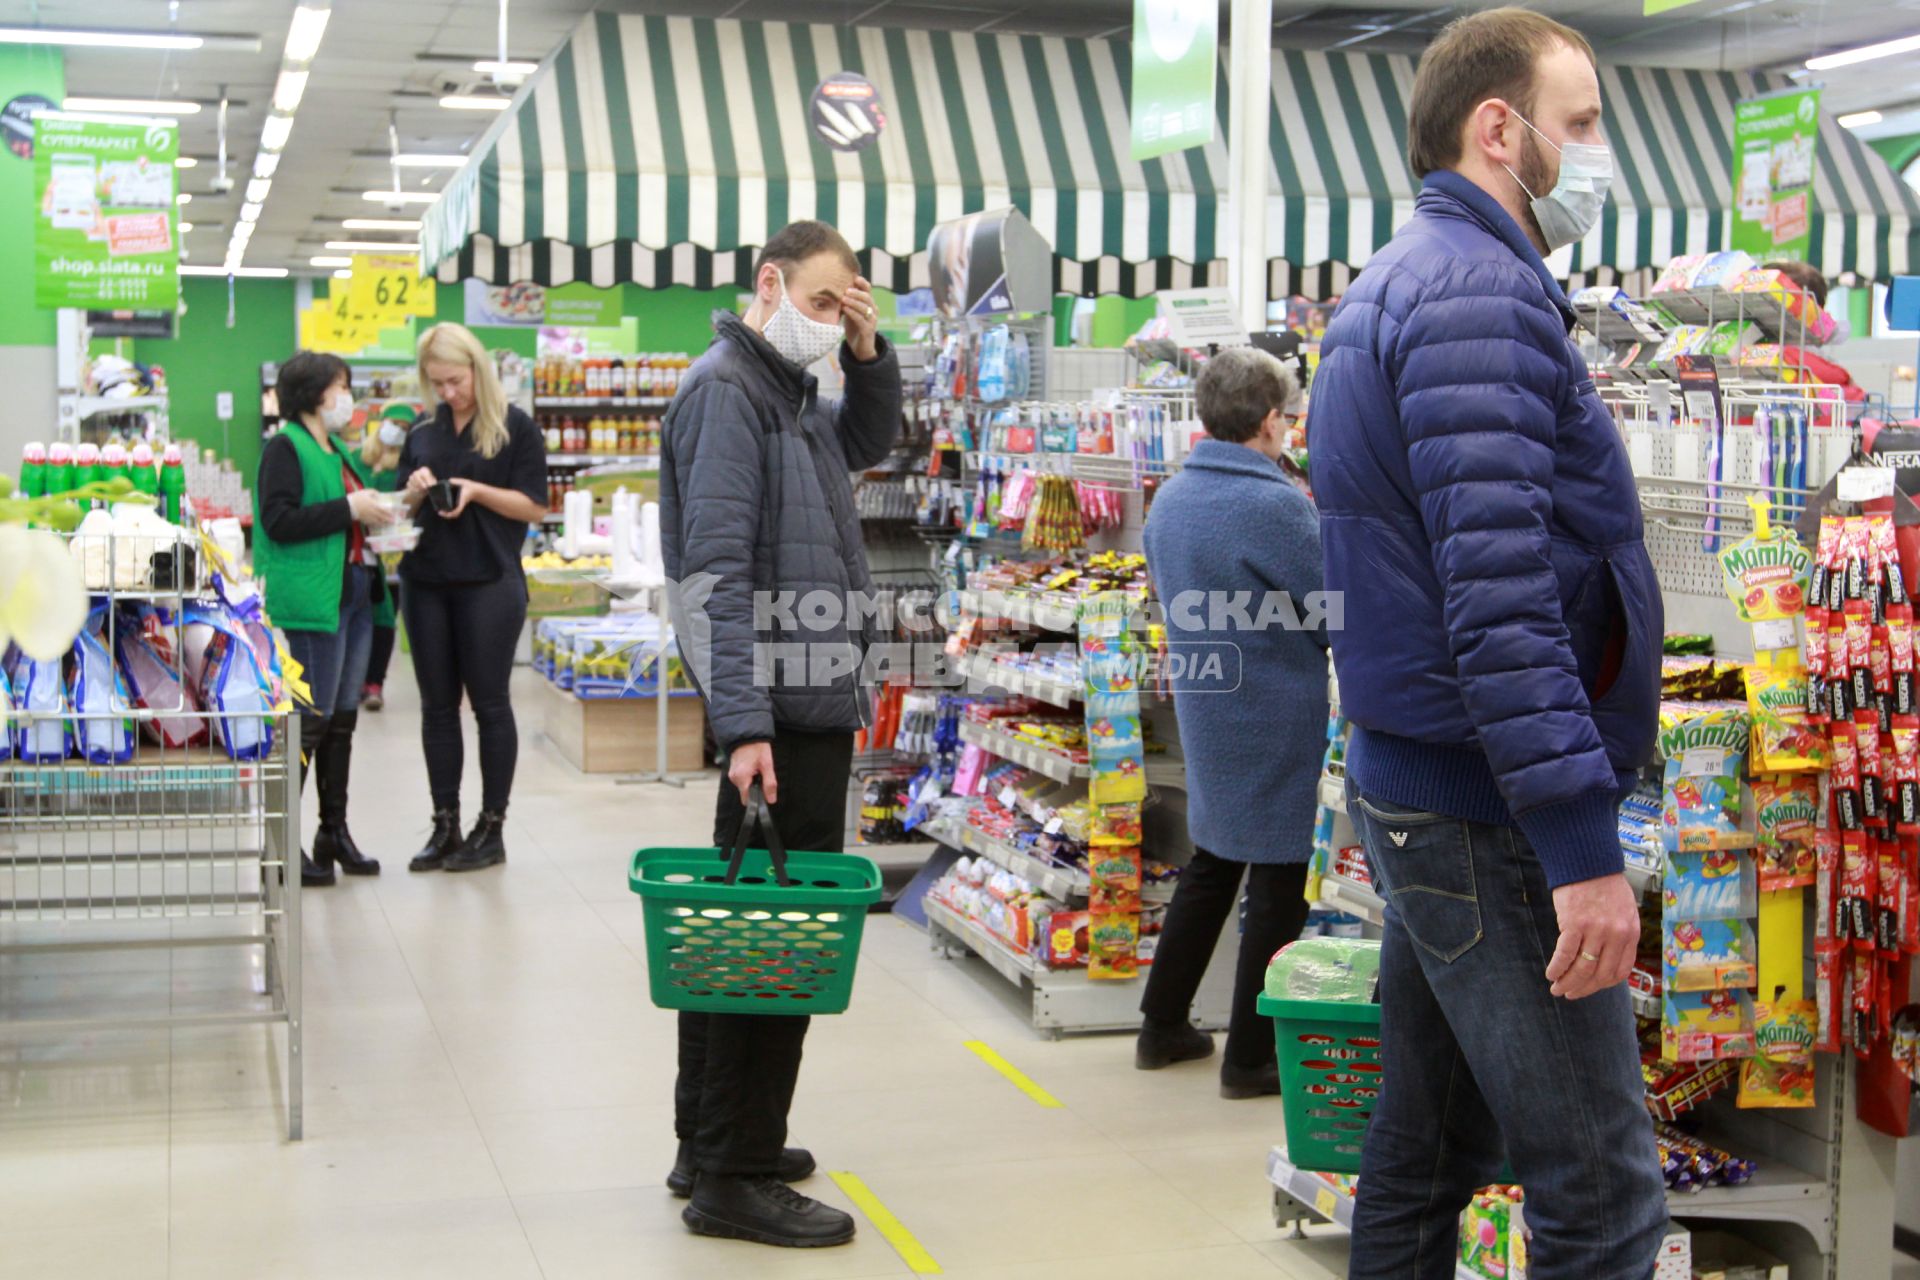 Иркутск. Покупатели в супермаркете.